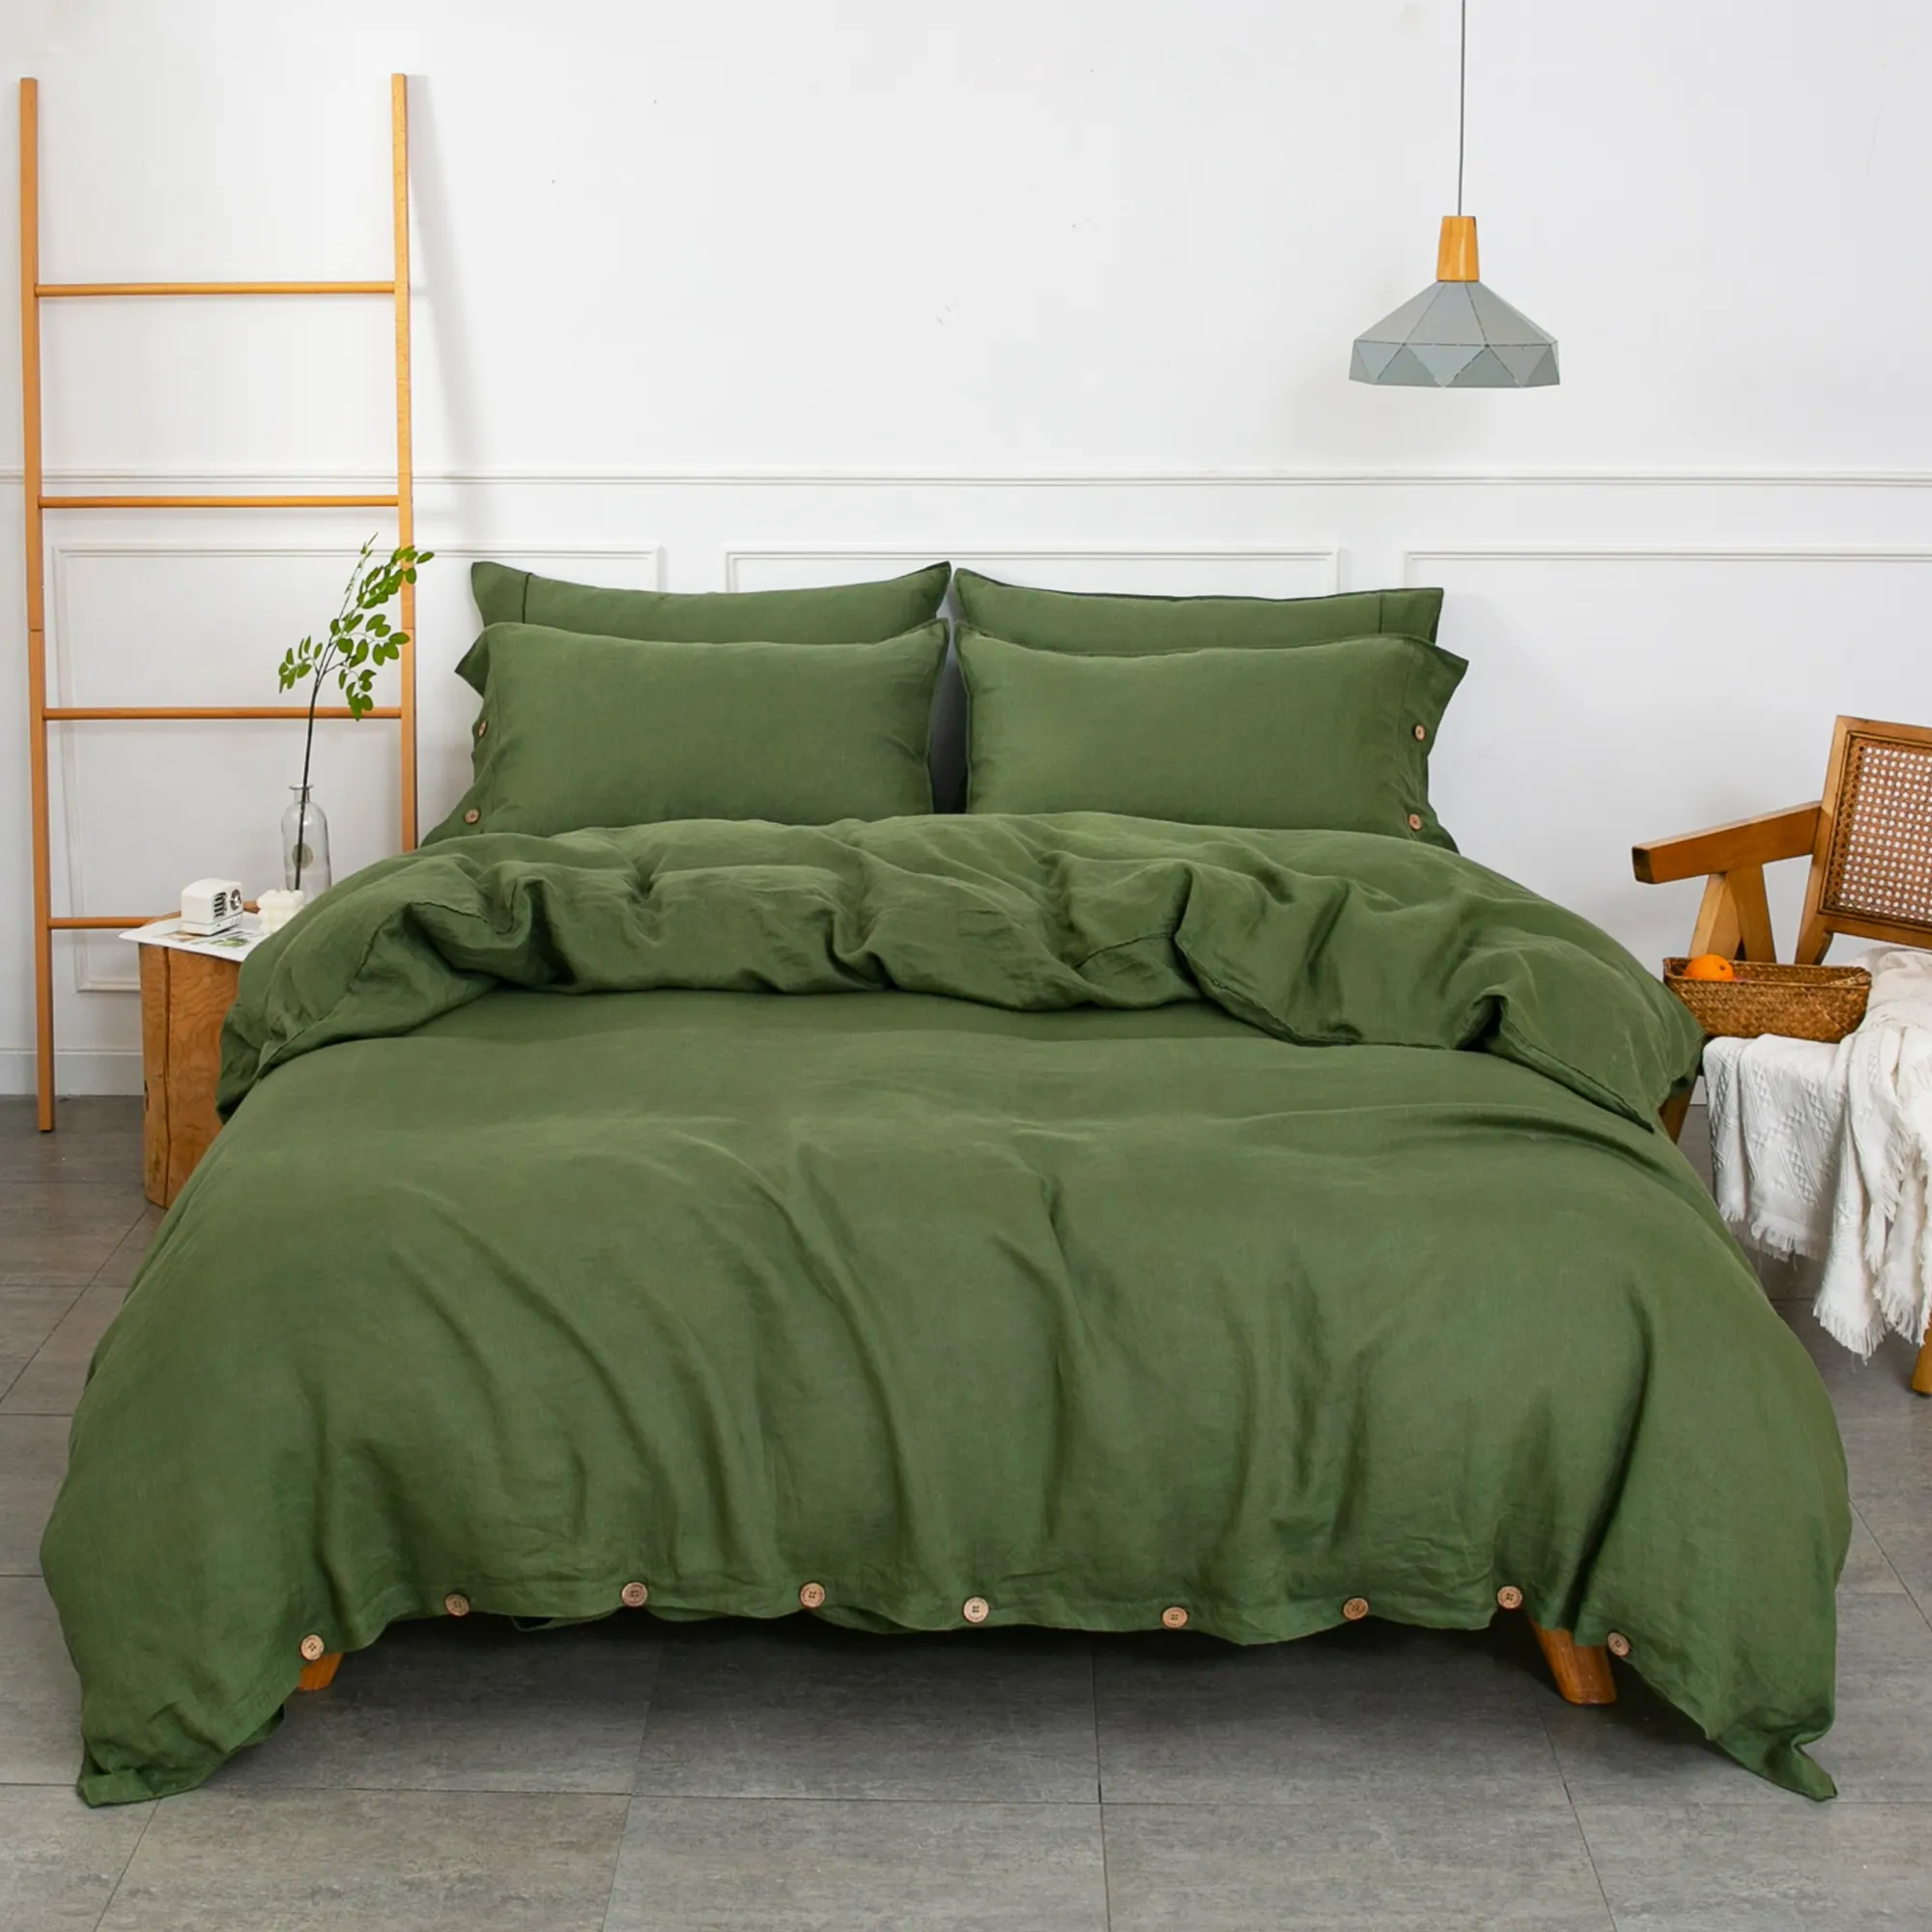 مجموعات جديدة من مفارش السرير مكونة من 7 قطع مجموعات فاخرة من أغطية السرير لحاف غرف النوم ملاءات السرير القطنية مجموعة مفارش السرير